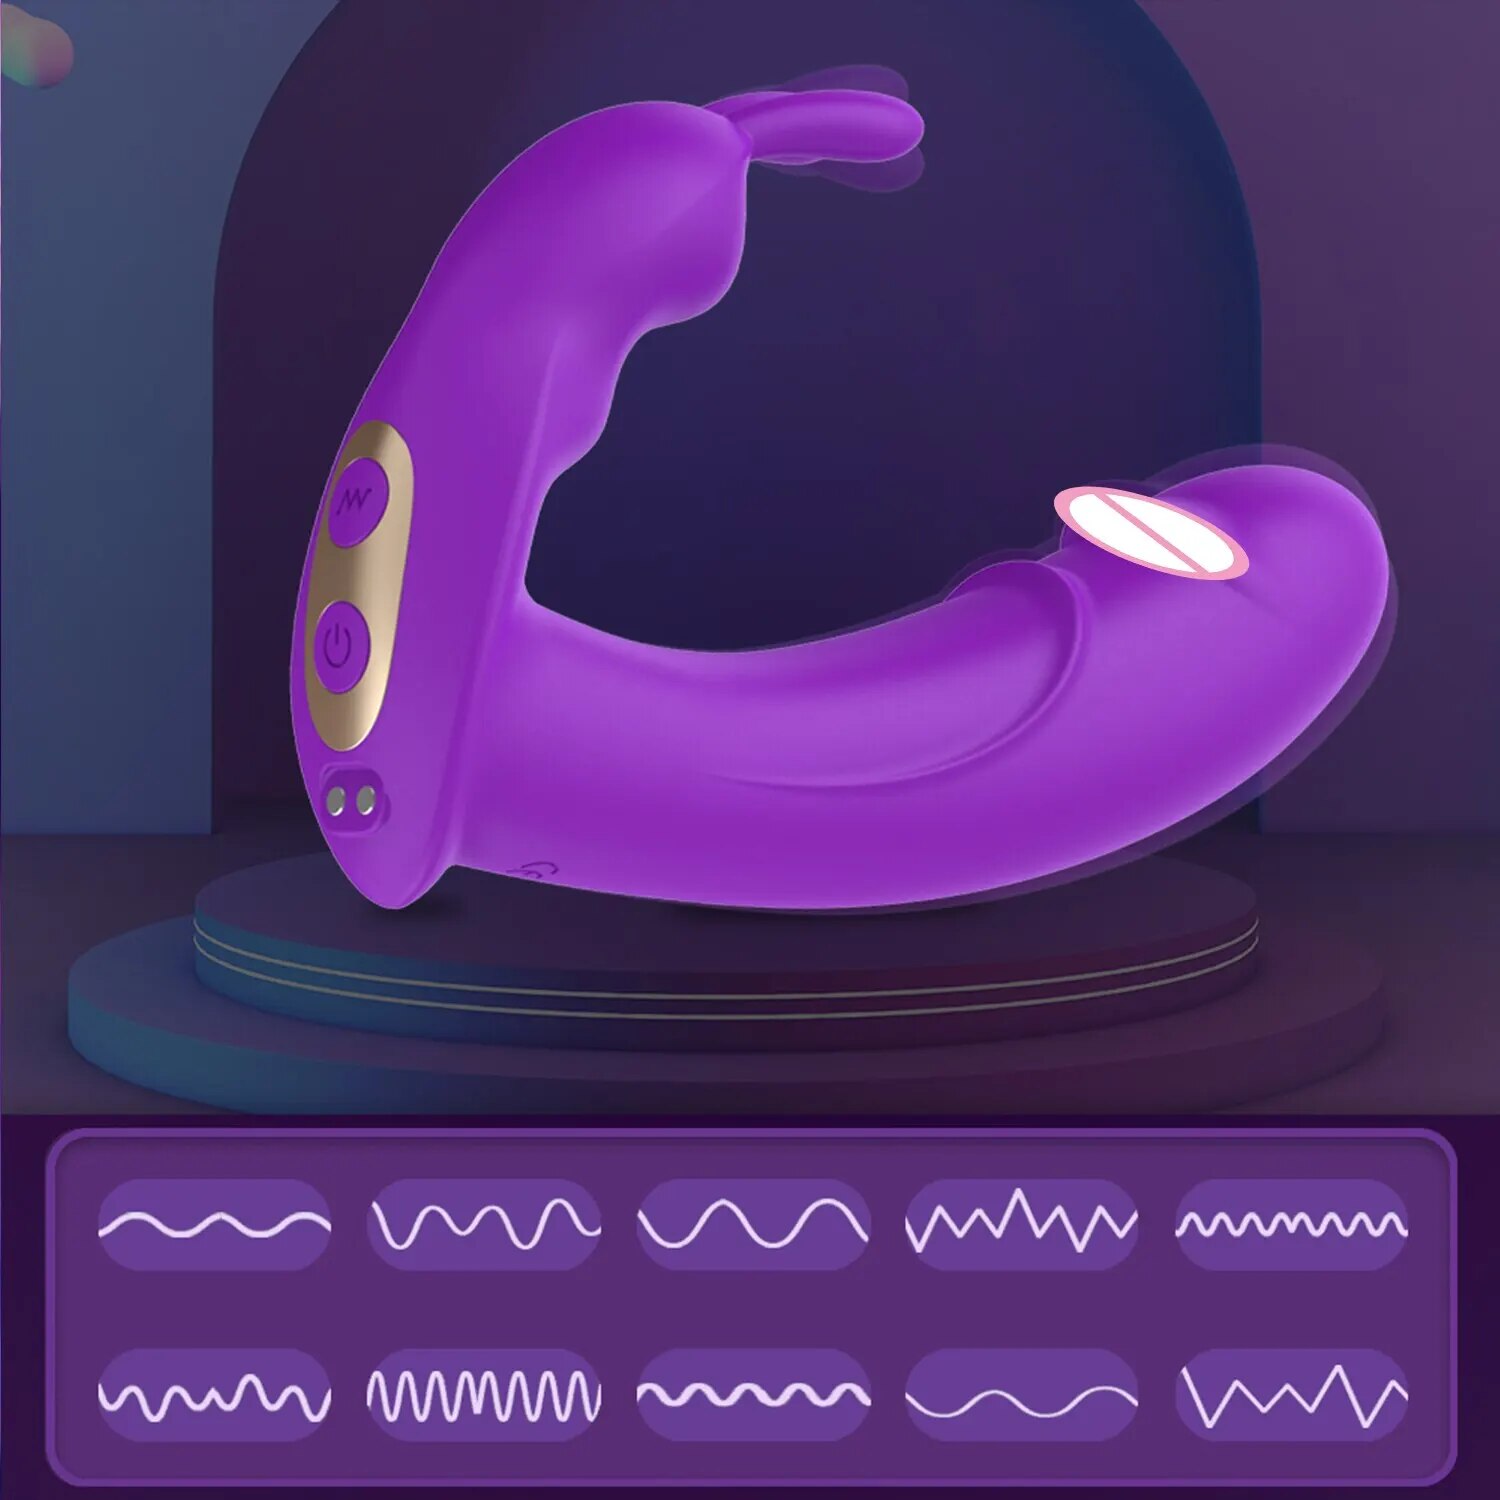  Địa chỉ bán Dương vật giả tai thỏ Mirea kết nối Bluetooth điều khiển qua app hàng xách tay